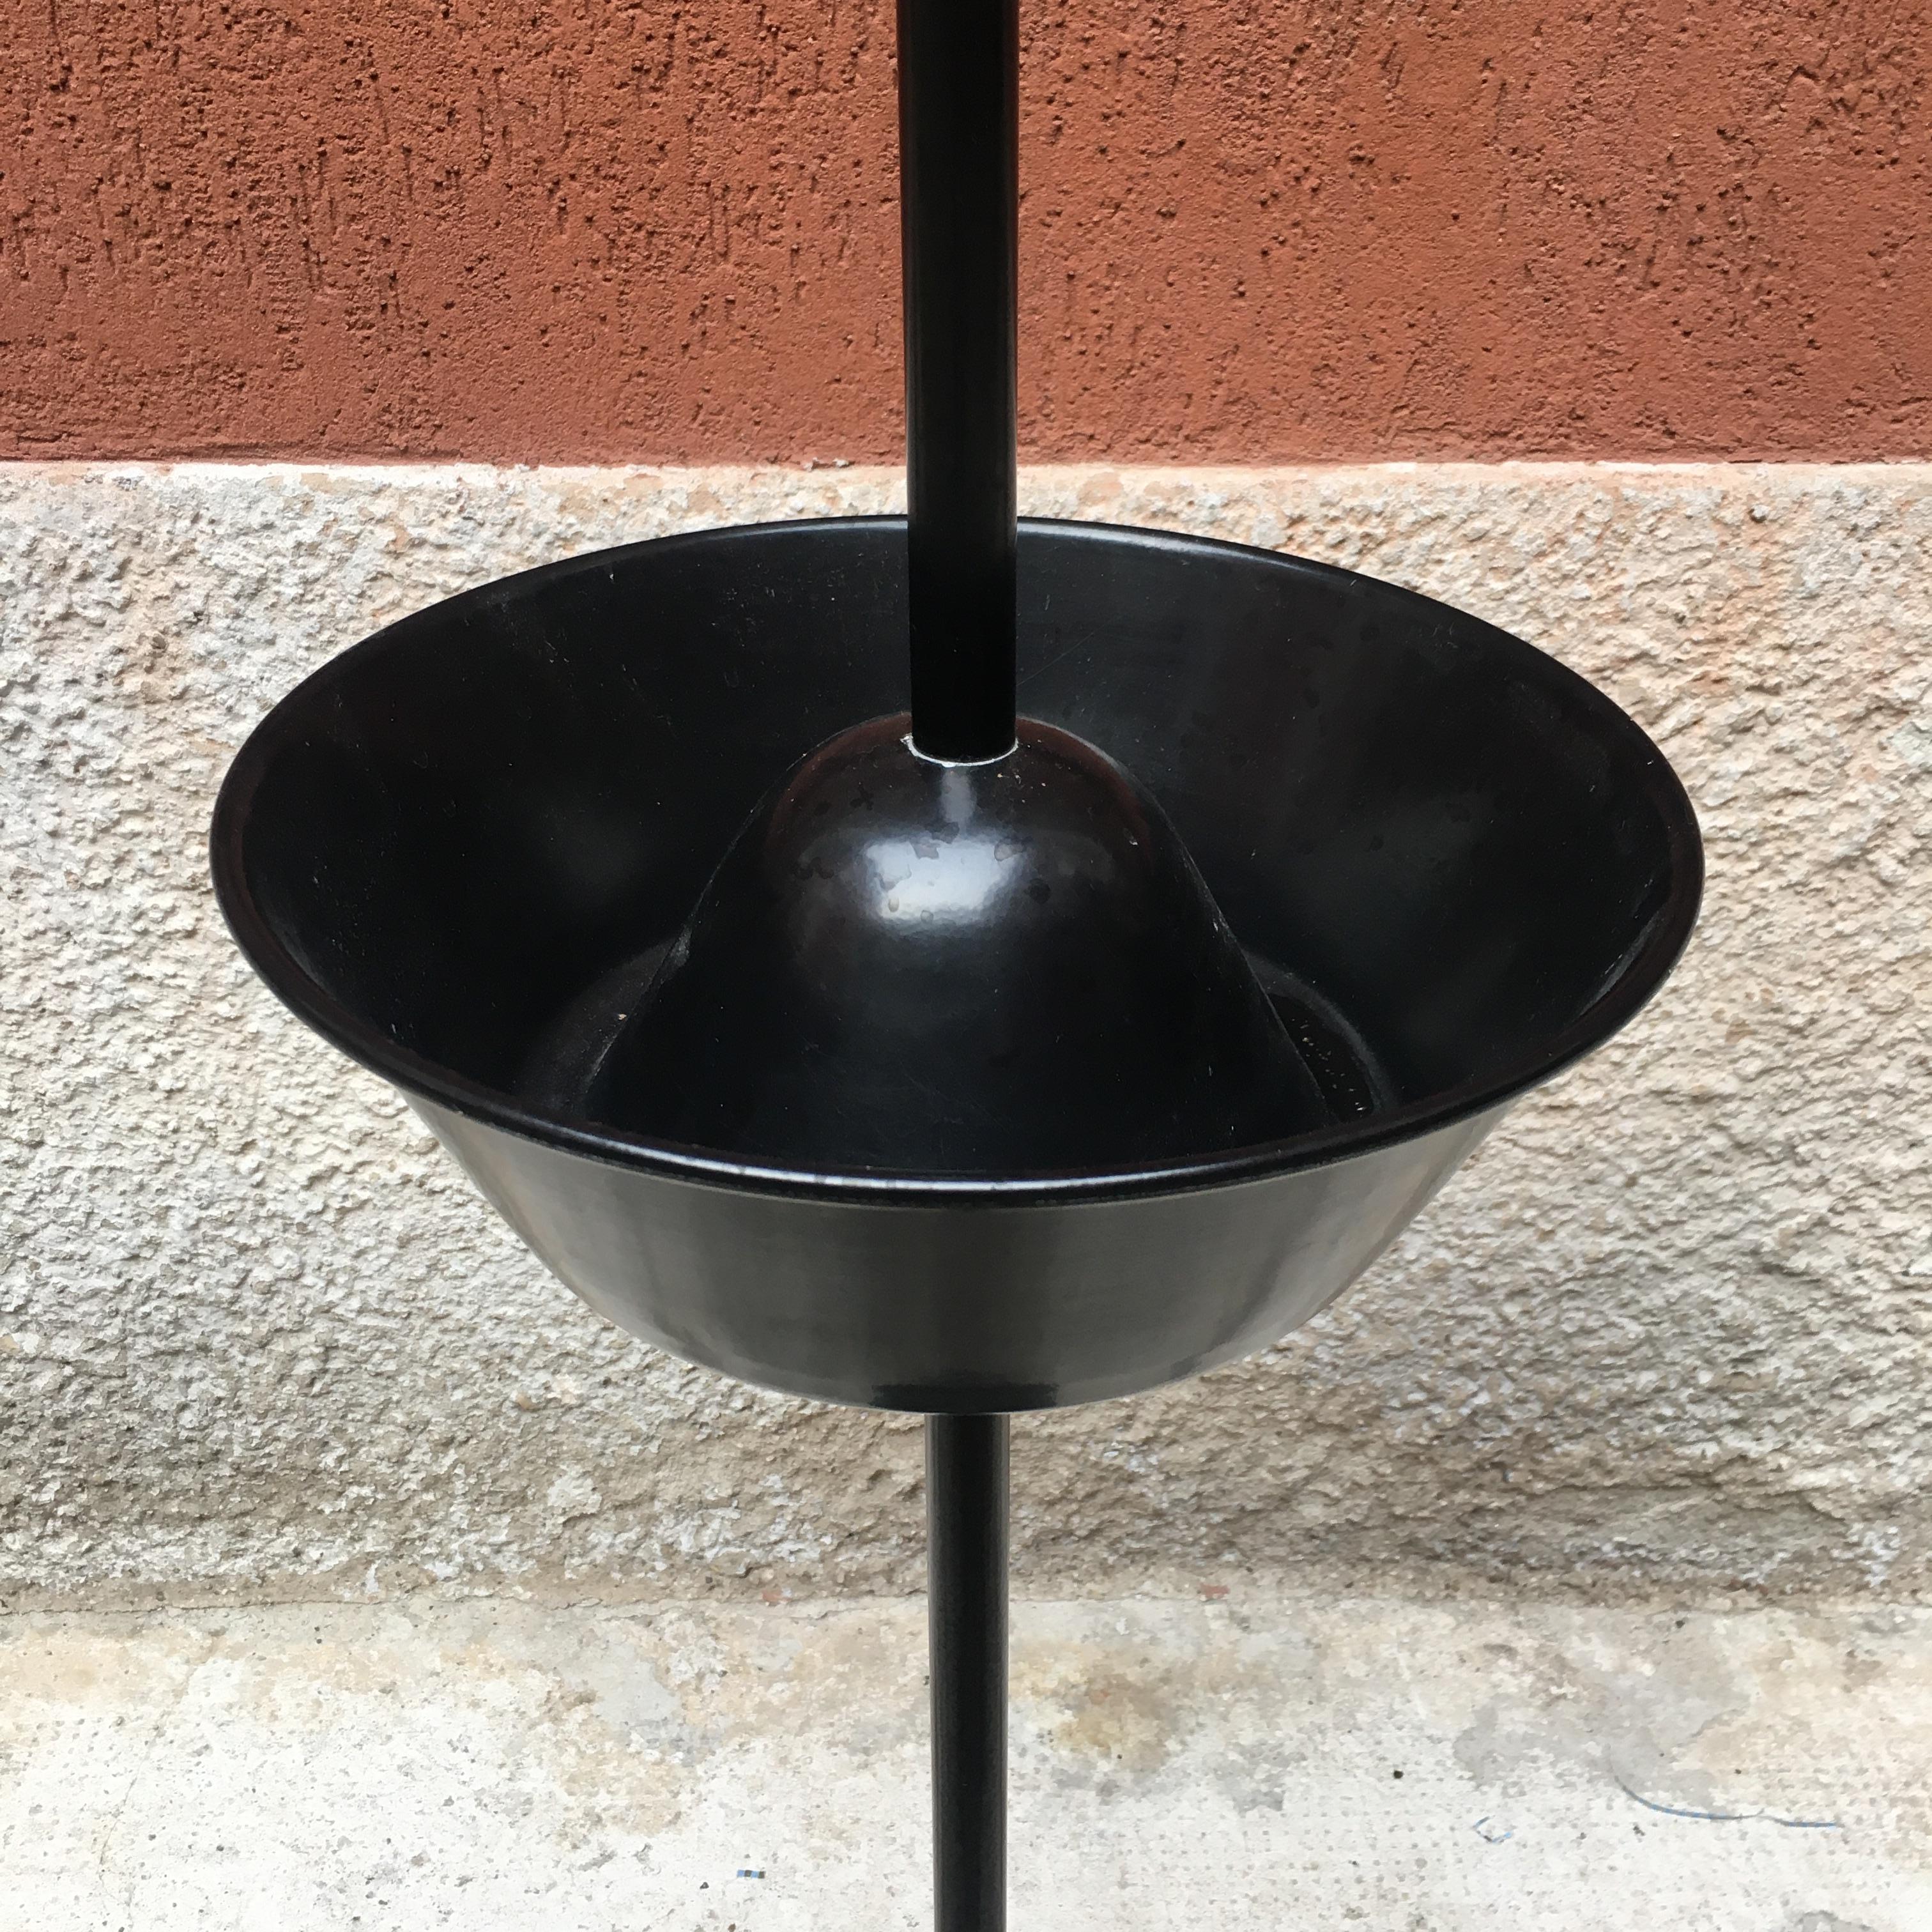 Mid-20th Century Italian Black Steel Servofumo Ashtray by Castiglioni for Zanotta, 1961